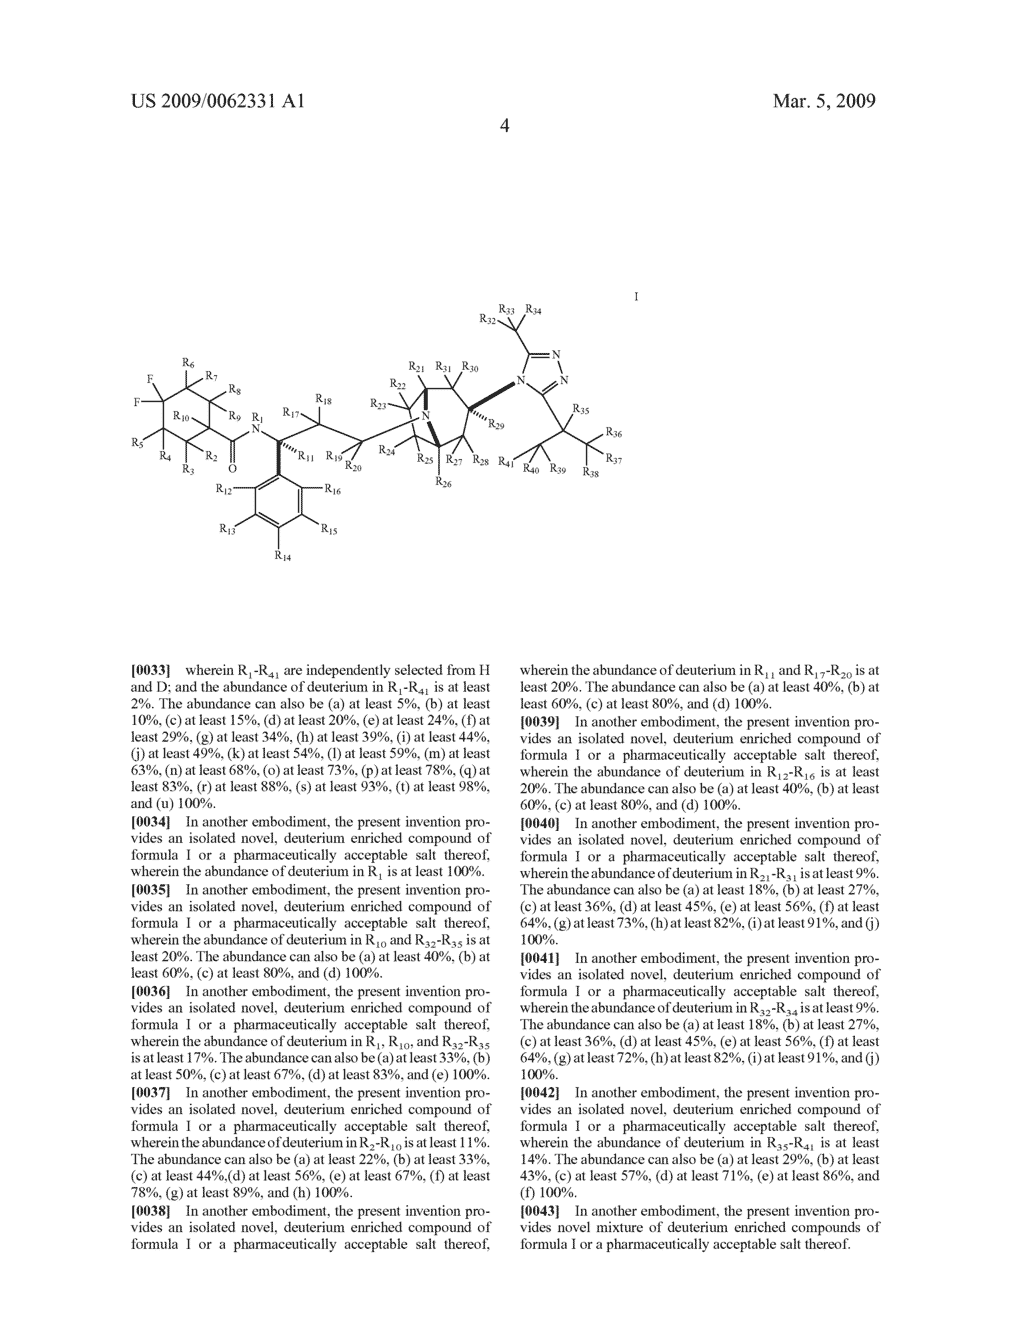 DEUTERIUM-ENRICHED MARAVIROC - diagram, schematic, and image 05